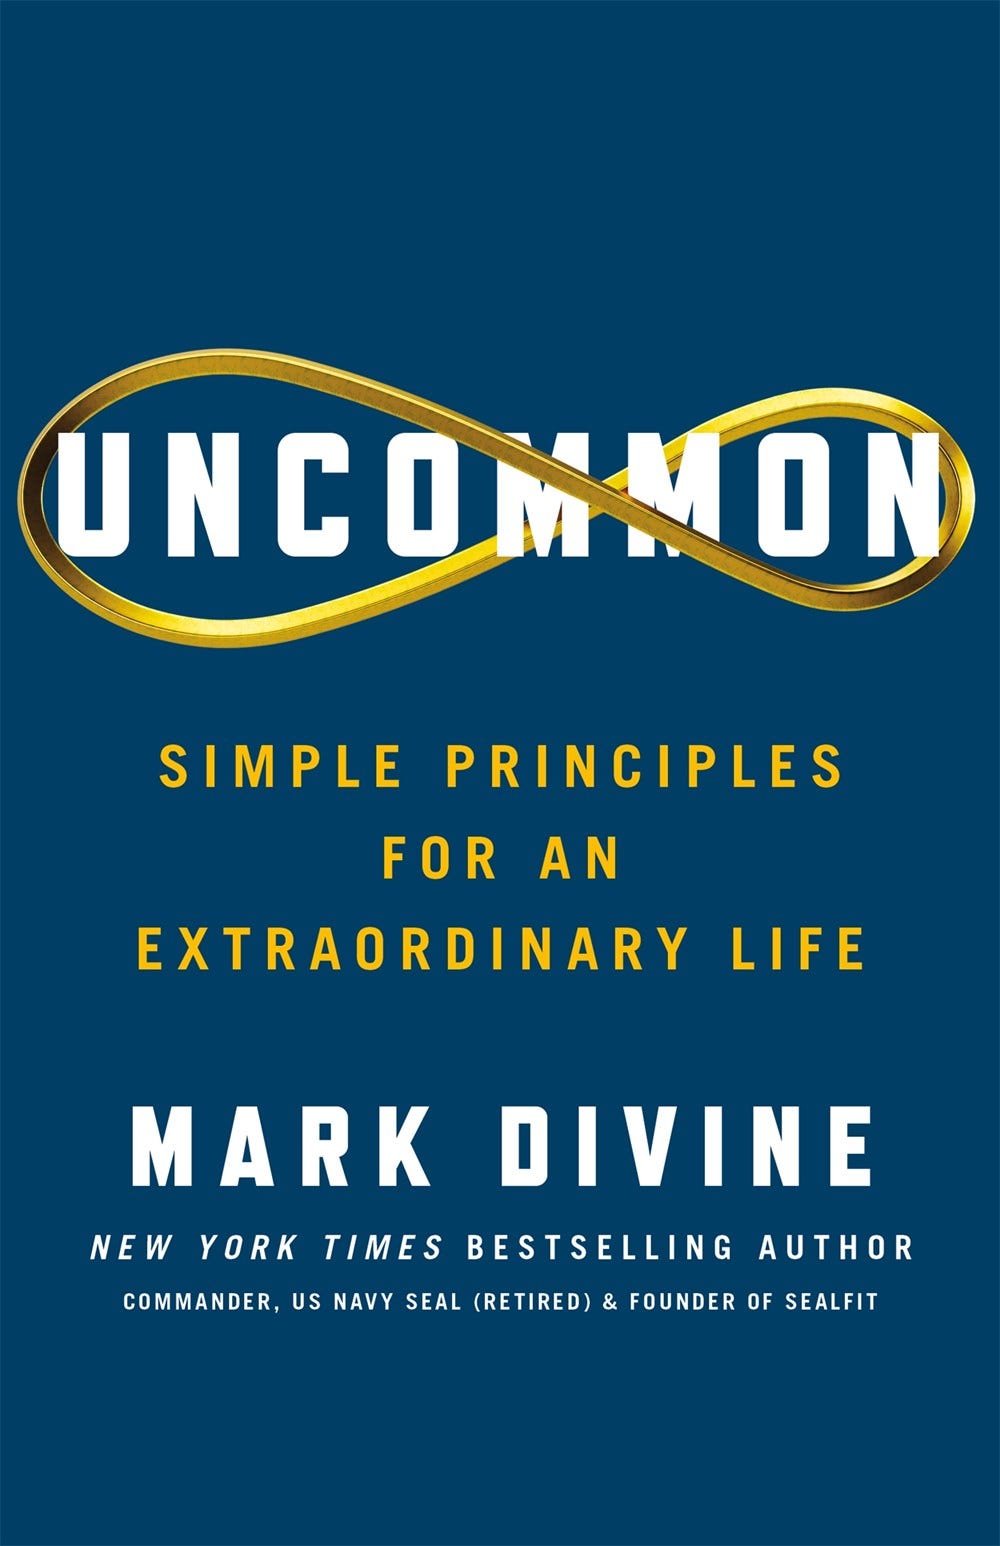 “Uncommon” Book Cover